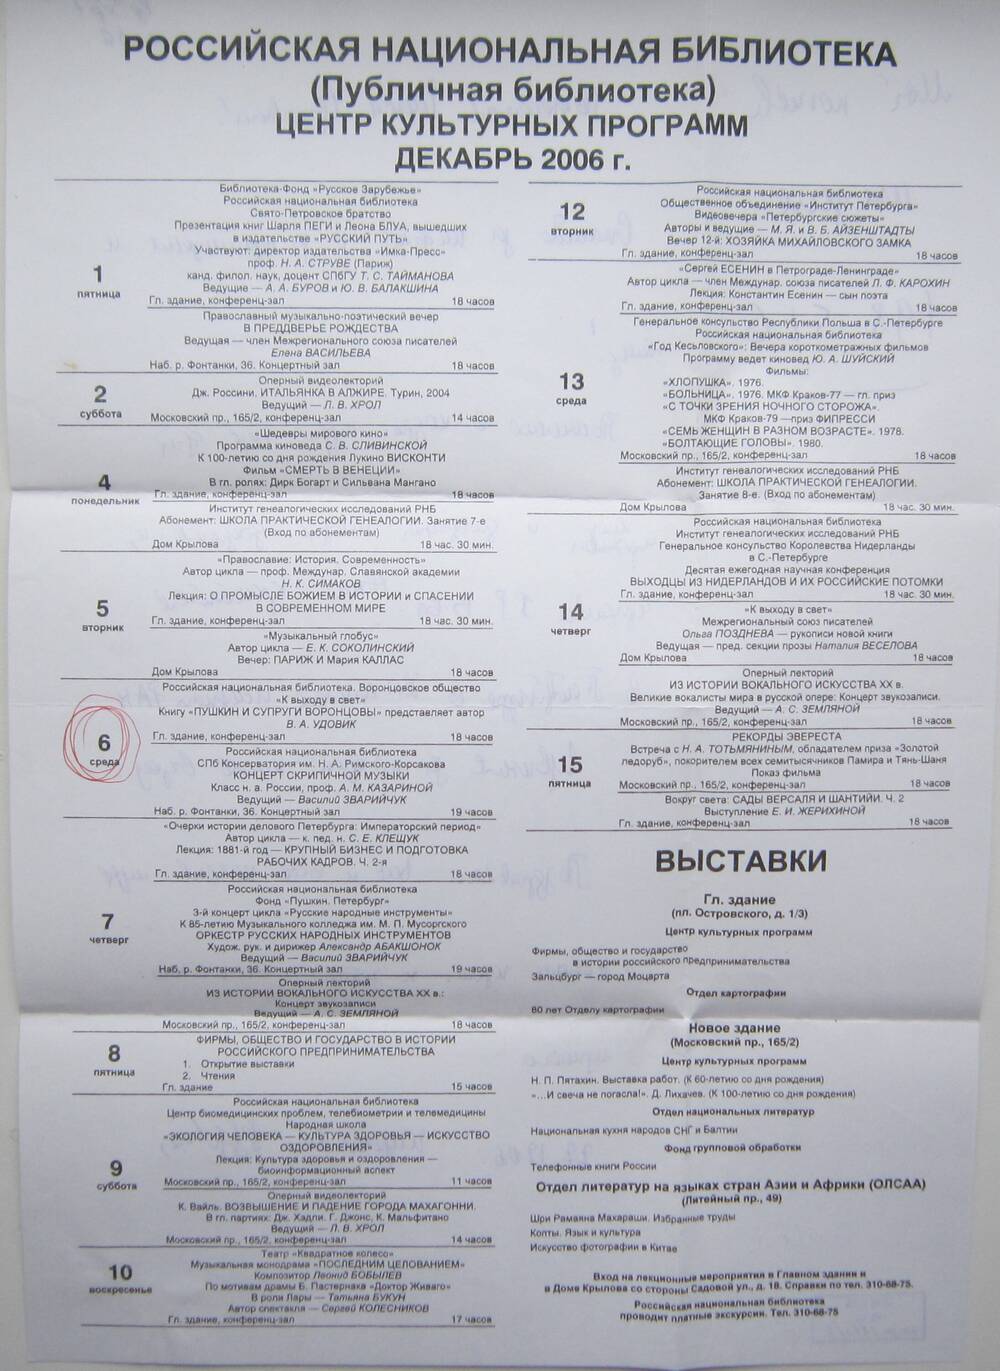 Программа Российской национальной библиотеки на декабрь 2006 г.
Коллекция документов, посвященных роду Воронцовых, собранная Удовиком В.А.